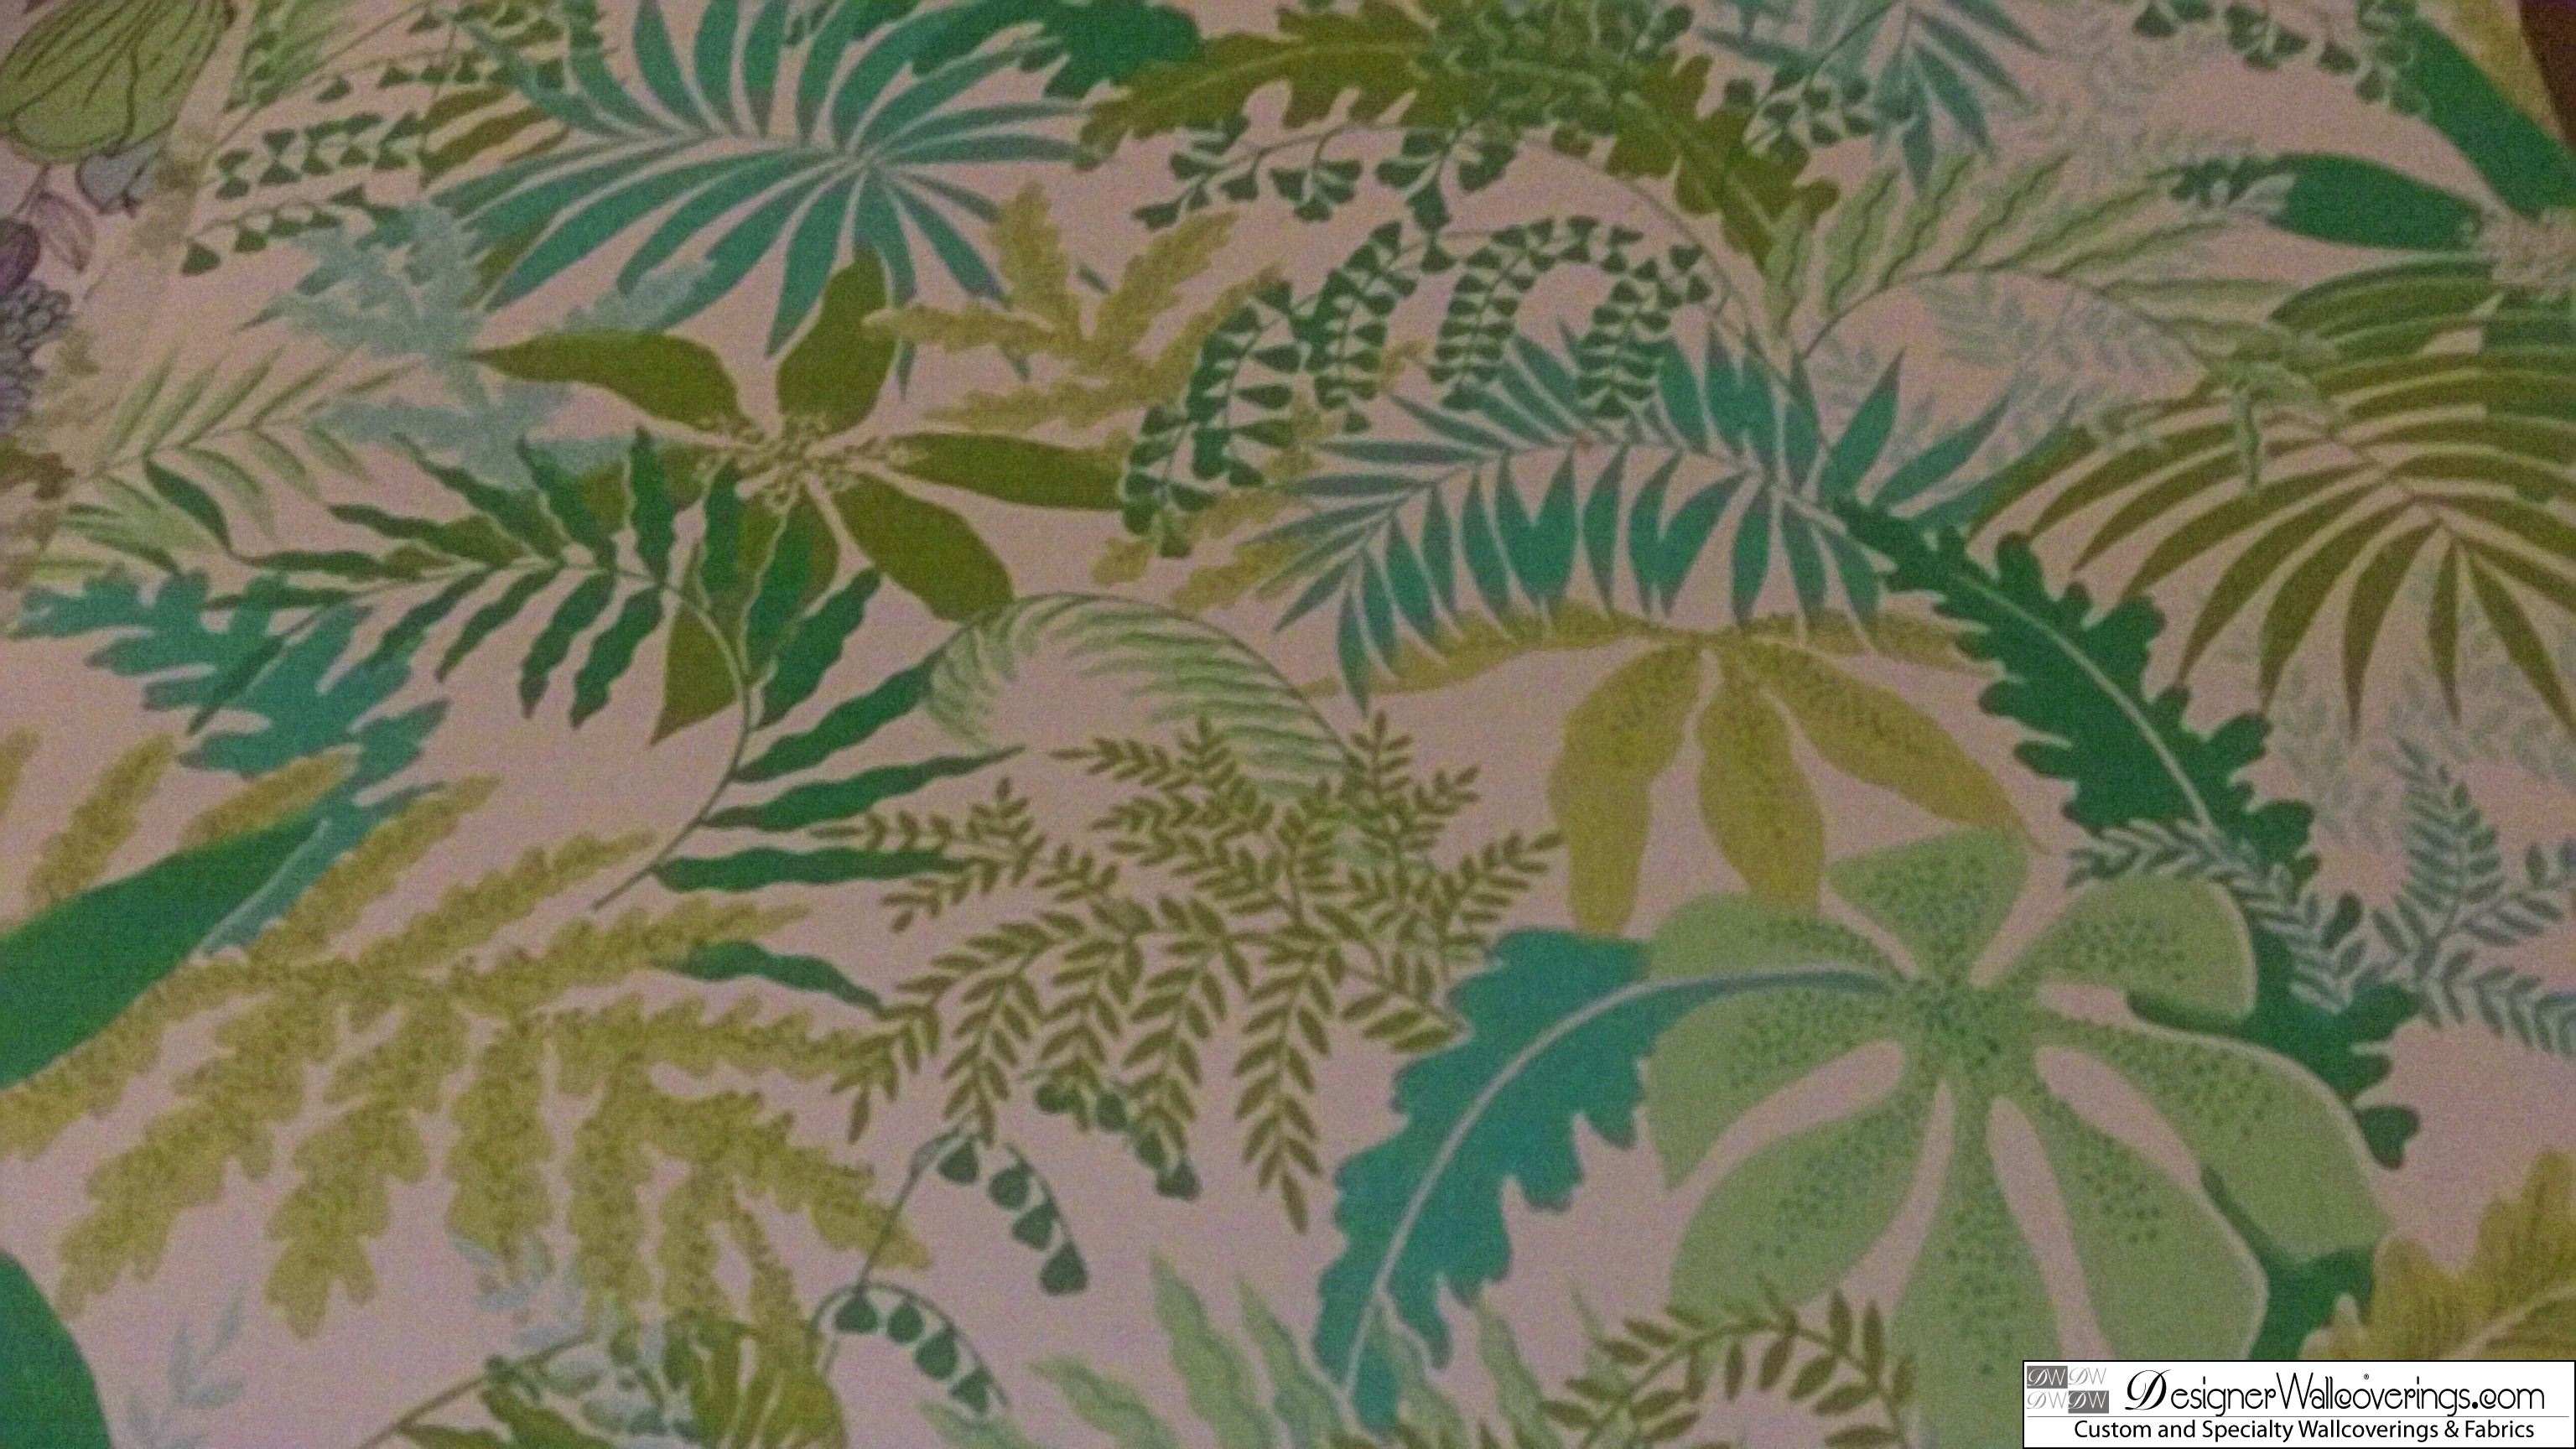 S Vintage Tropical Wallpaper Dig Designer Wallcoverings